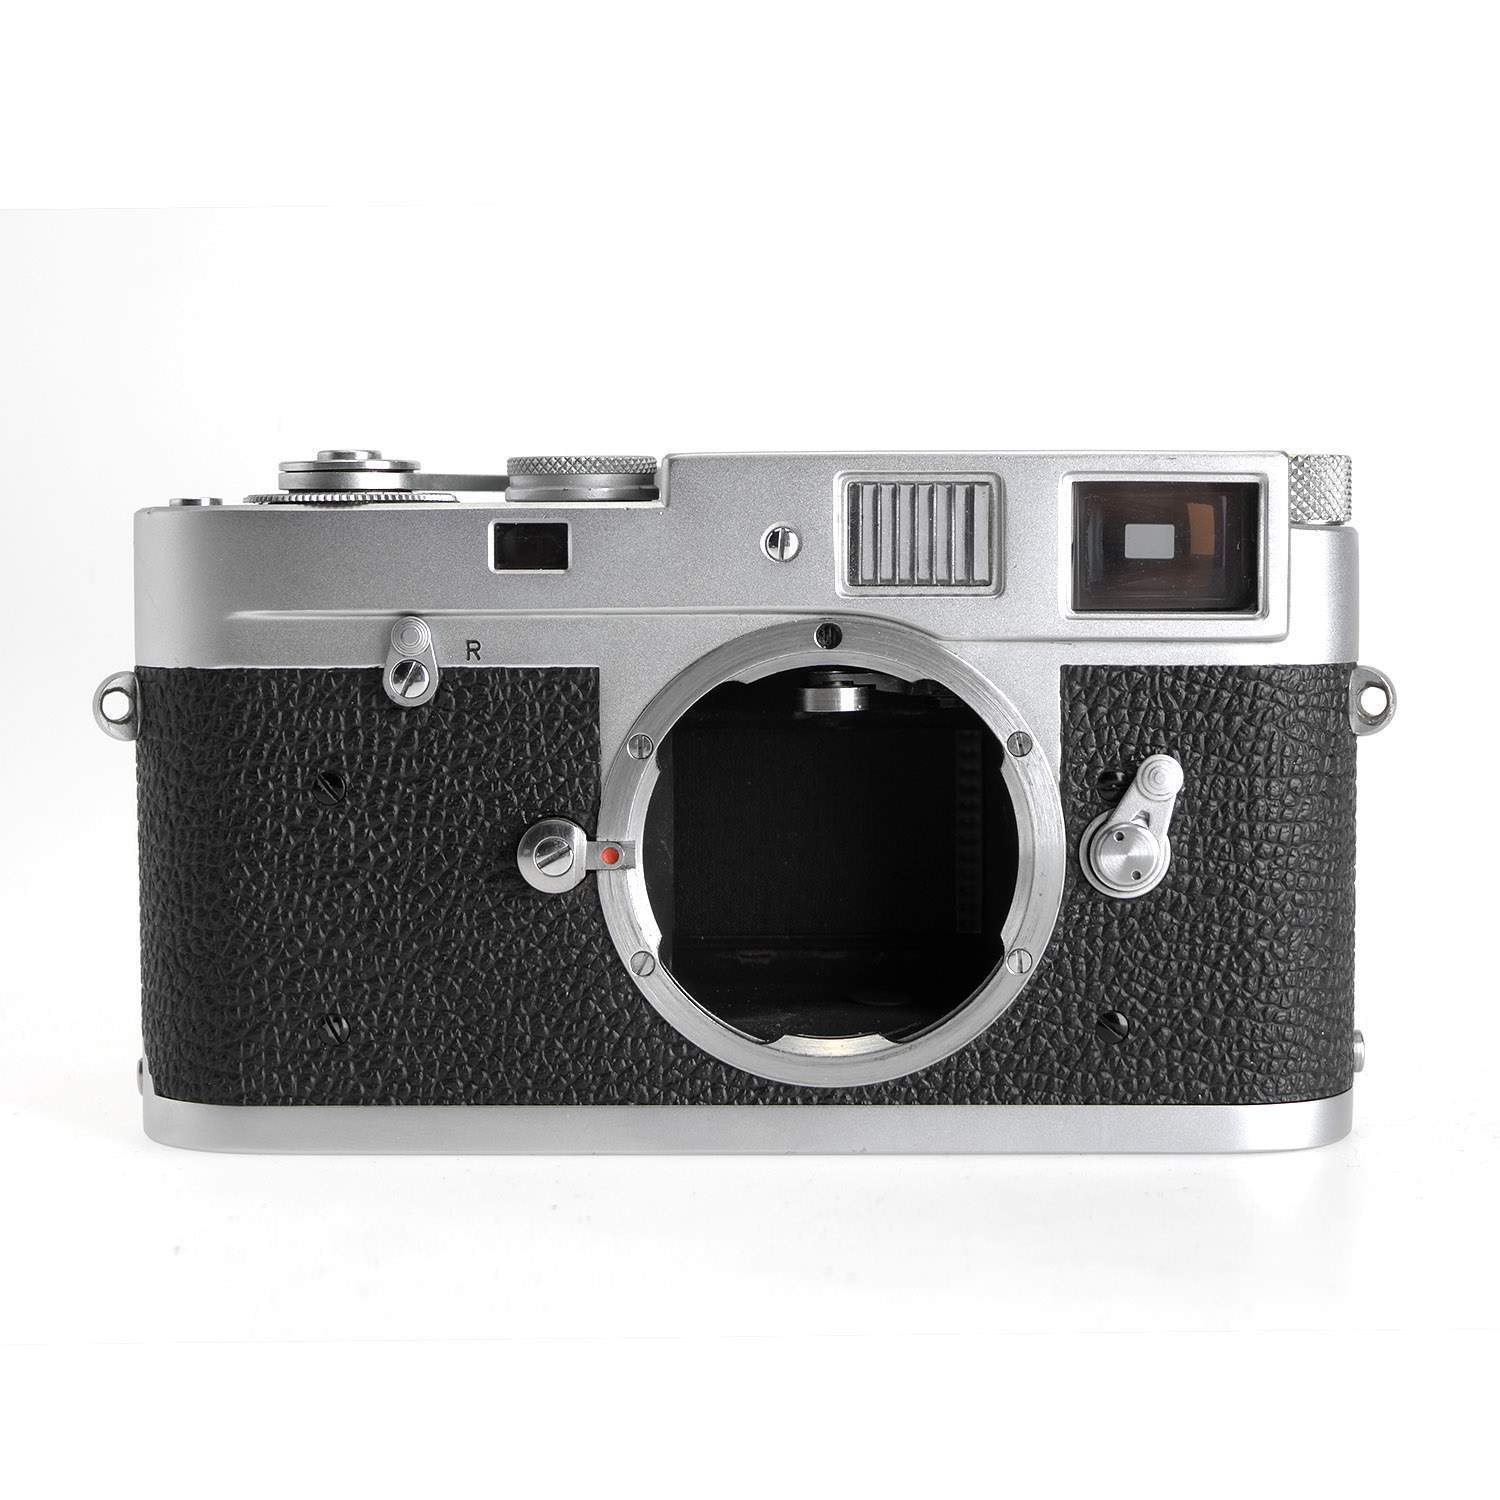 93新 少见早期 徕卡 Leica M2-M 马达版机身